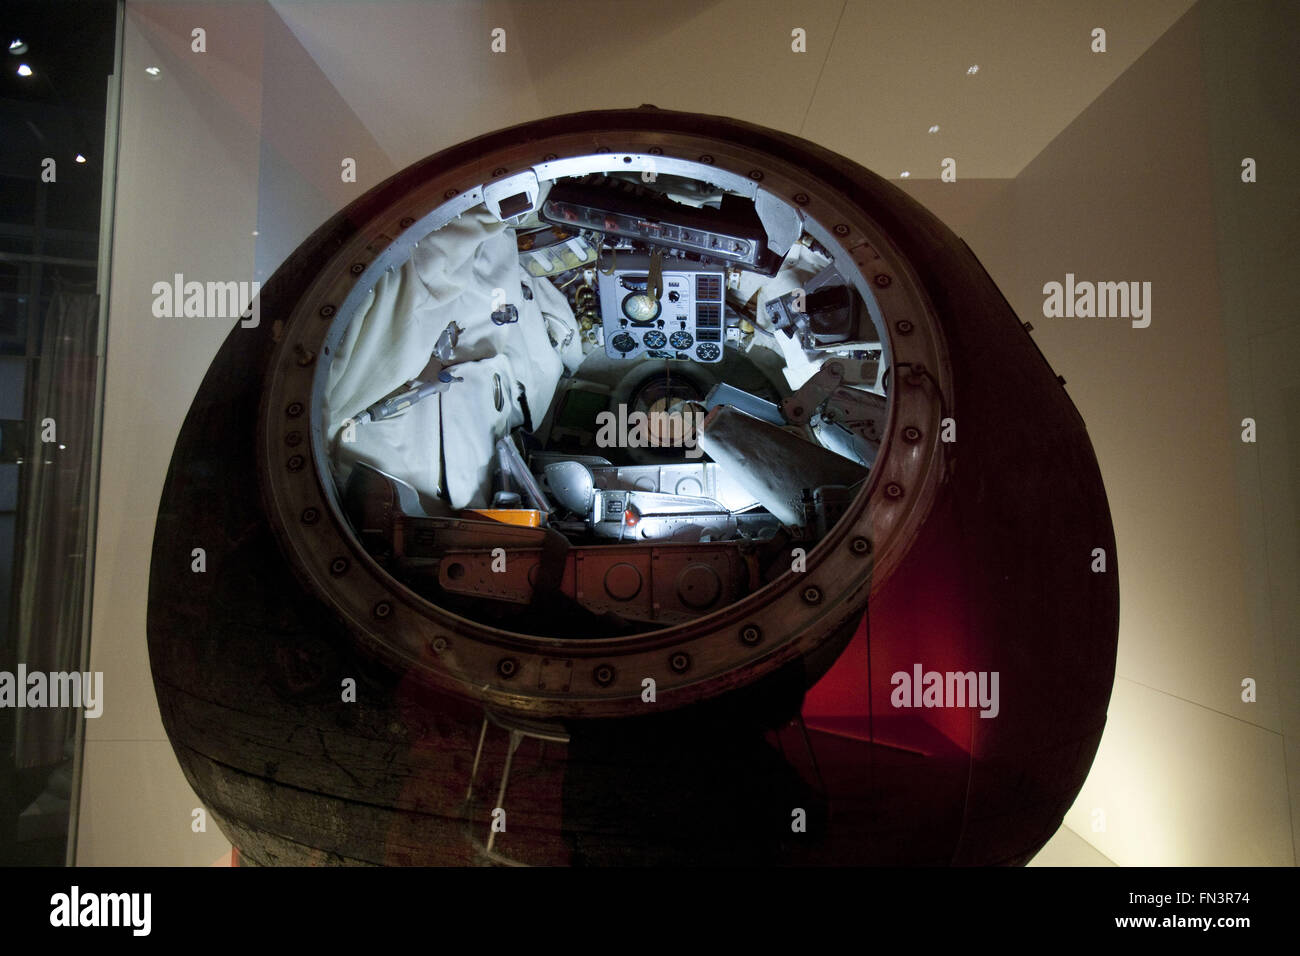 Londres, Reino Unido. 12 Mar, 2016. Los cosmonautas: el nacimiento de la era espacial.VOSKHOD-1 cápsulas de descenso, 1964.El Museo de la ciencia exposición ha reunido una importante colección de nave rusa y artefactos que jamás se muestra en el Reino Unido. En 1957, Rusia lanzó el primer satélite artificial, el Sputnik, en el espacio y sólo cuatro años más tarde envió la primera derechos ''" Yuri Gagarin. Era Rusia que convirtió el sueño de los viajes espaciales en una realidad y se convirtió en la primera nación para explorar el espacio. En la pantalla fue Vostok 6: la cápsula volado por Valentina Tereshkova, la primera mujer en el espacio, Foto de stock